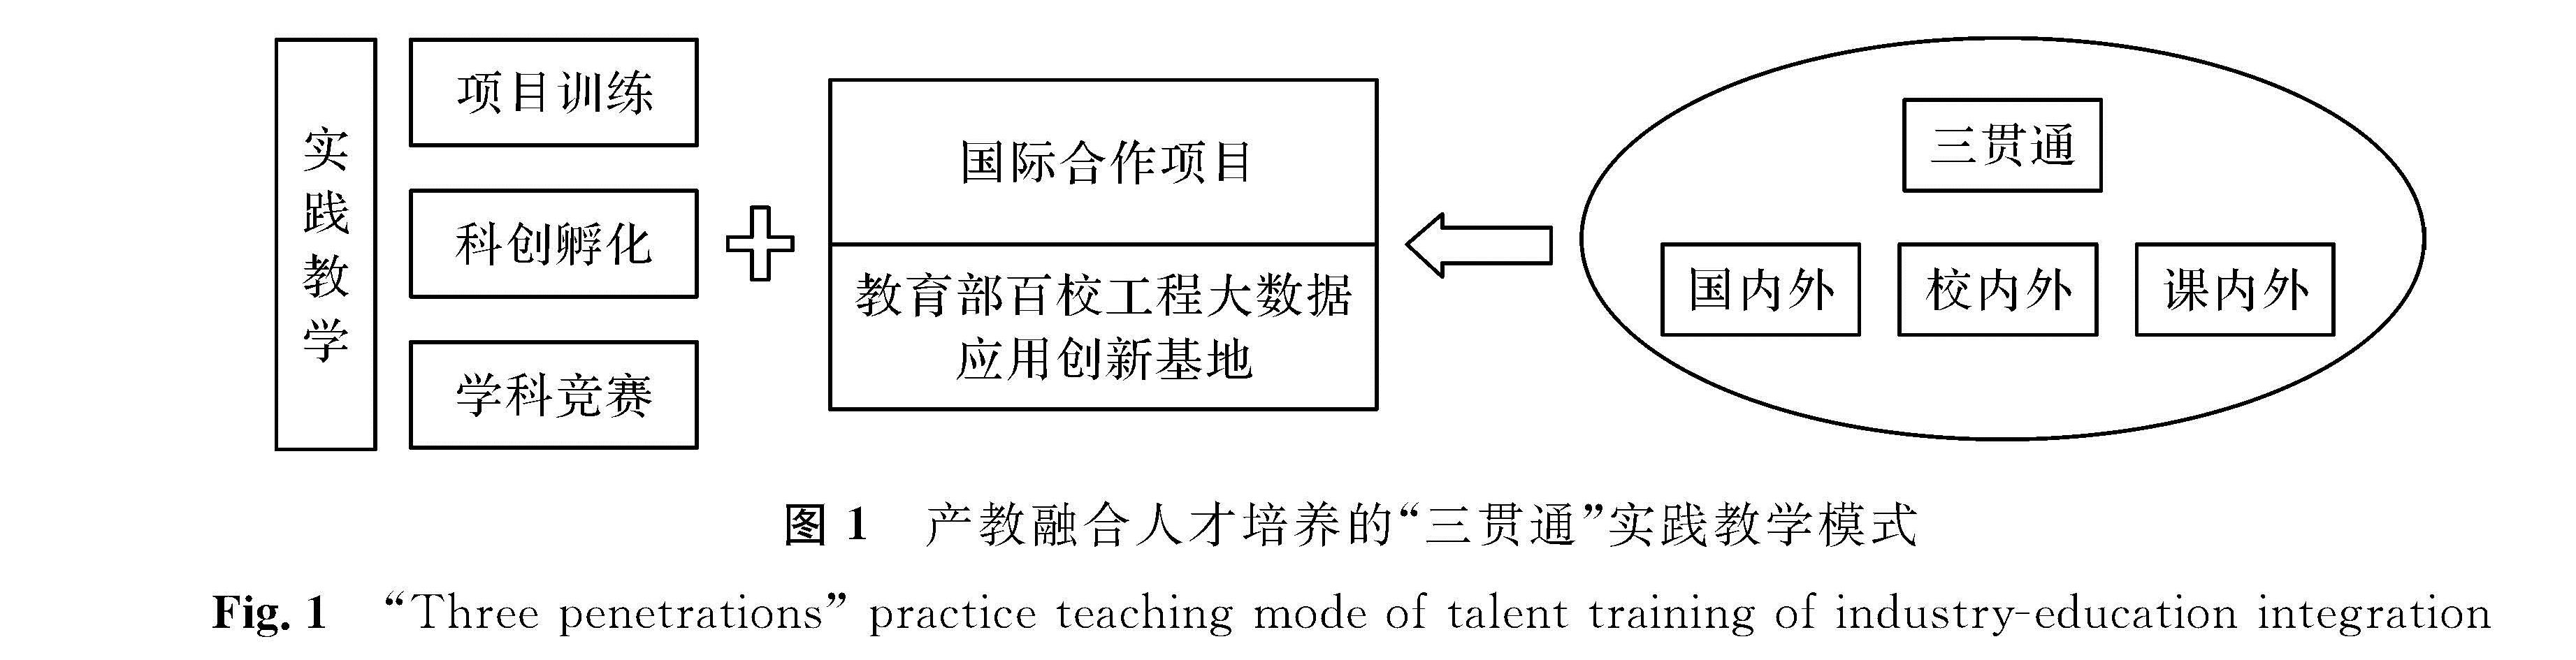 图1 产教融合人才培养的“三贯通”实践教学模式<br/>Fig.1 “Three penetrations” practice teaching mode of talent training of industry-education integration